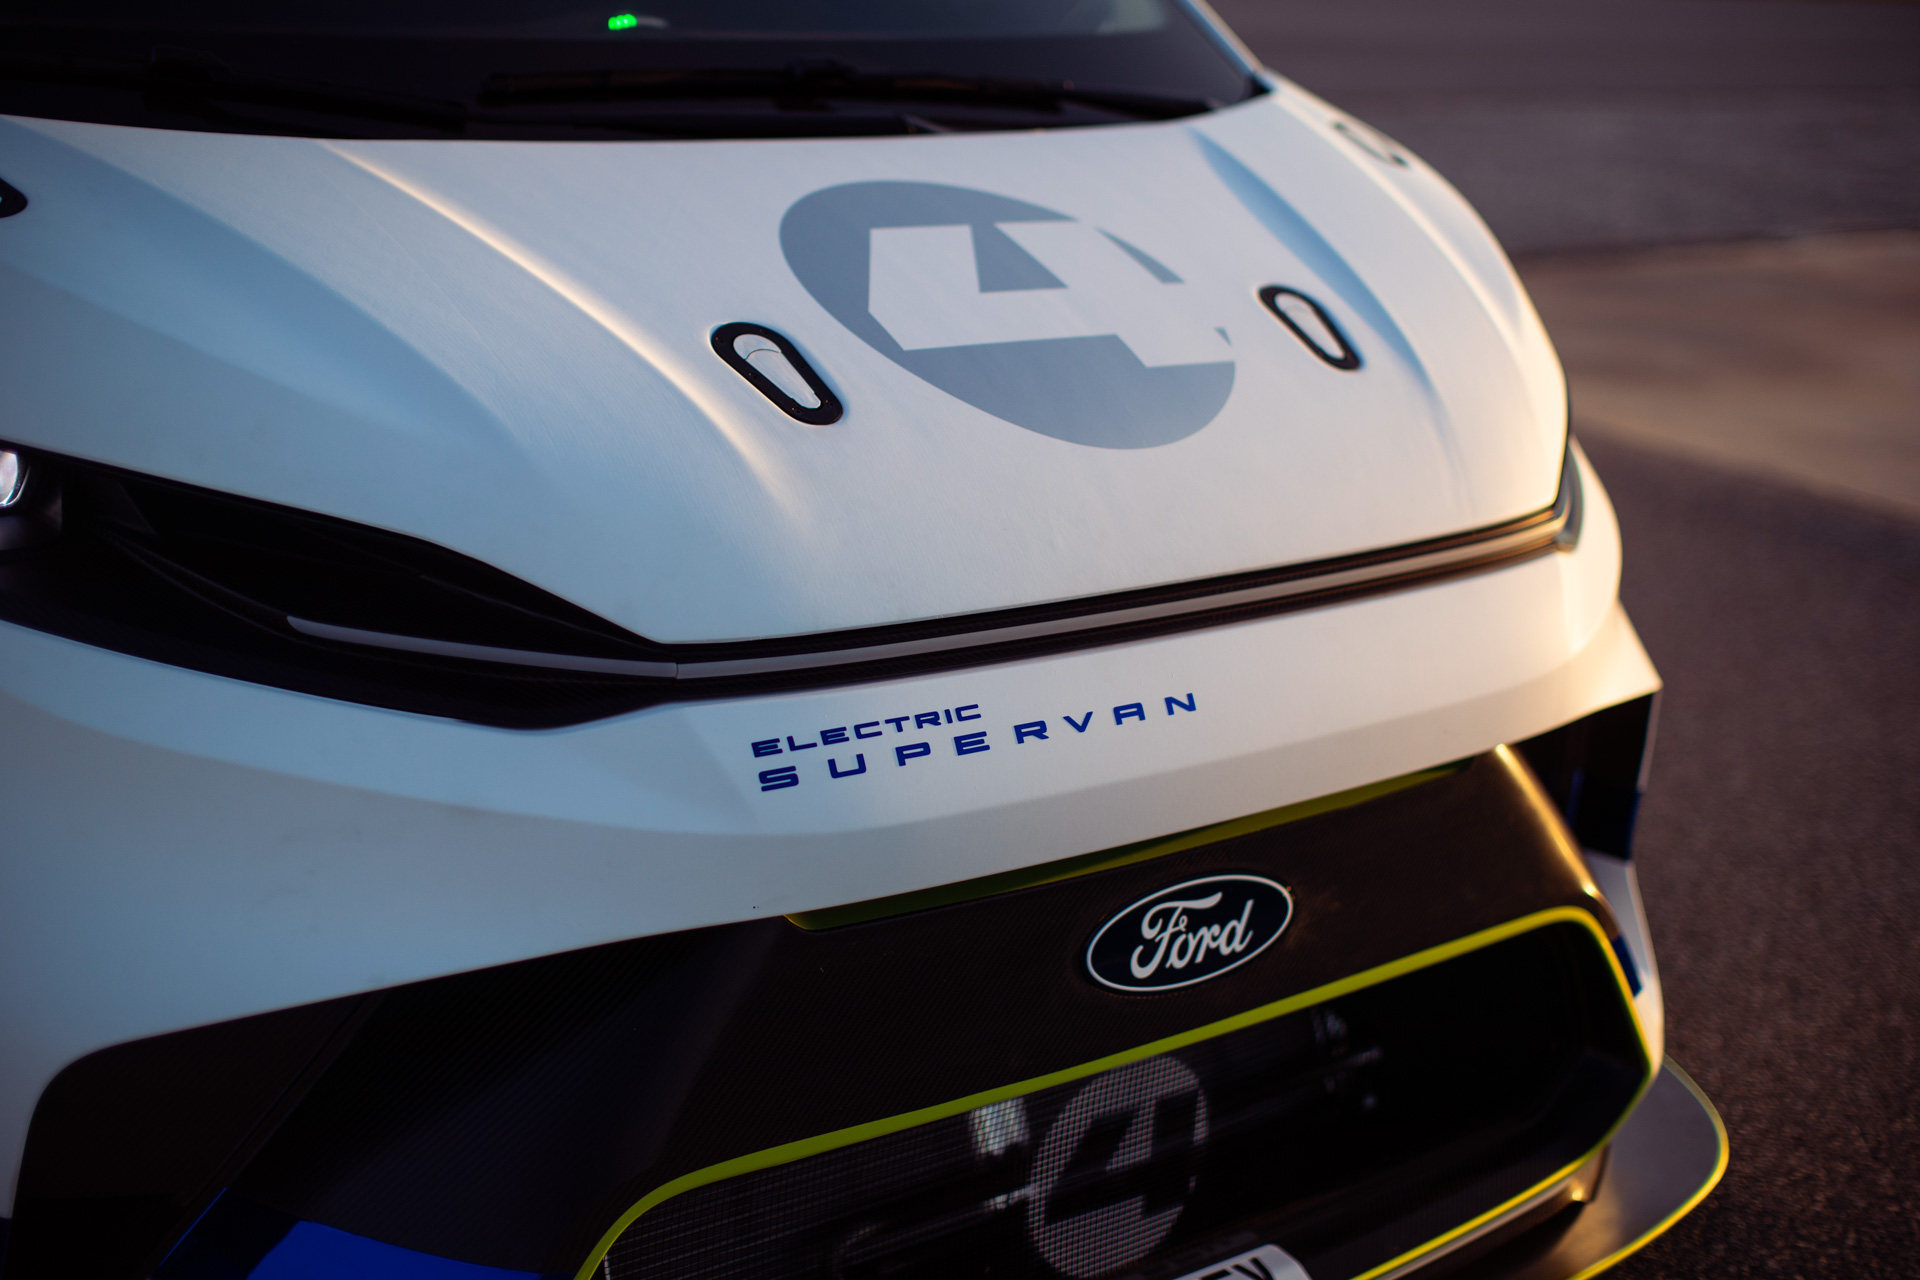 Yaklaşık 2000 beygir güce sahip Ford Electric SuperVan, Goodwood'da yarışacak